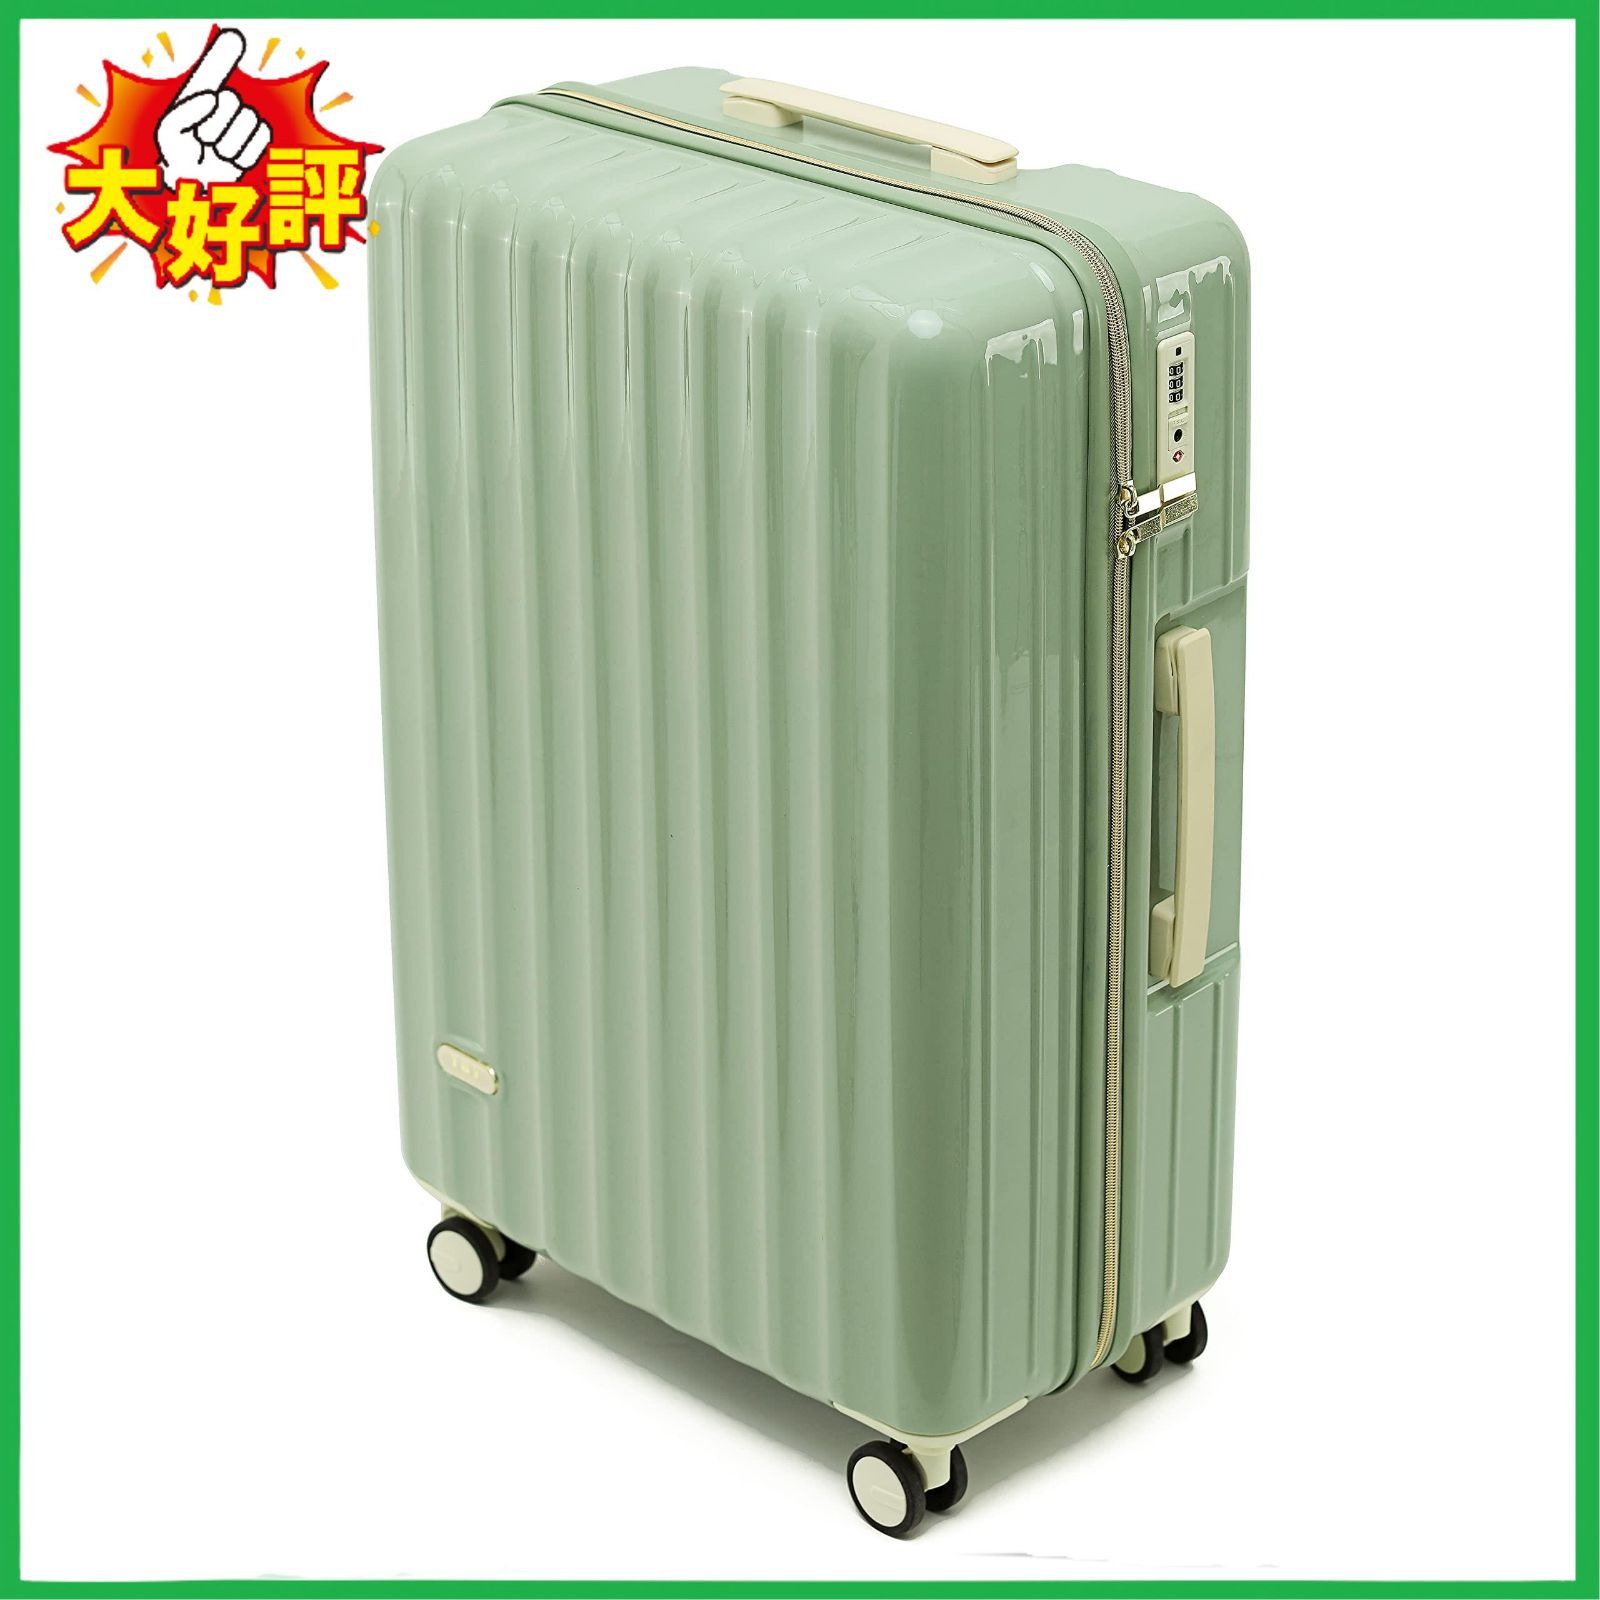 ピスタチオグリーン スーツケース mサイズ キャリーバッグ キャリーケース 旅行